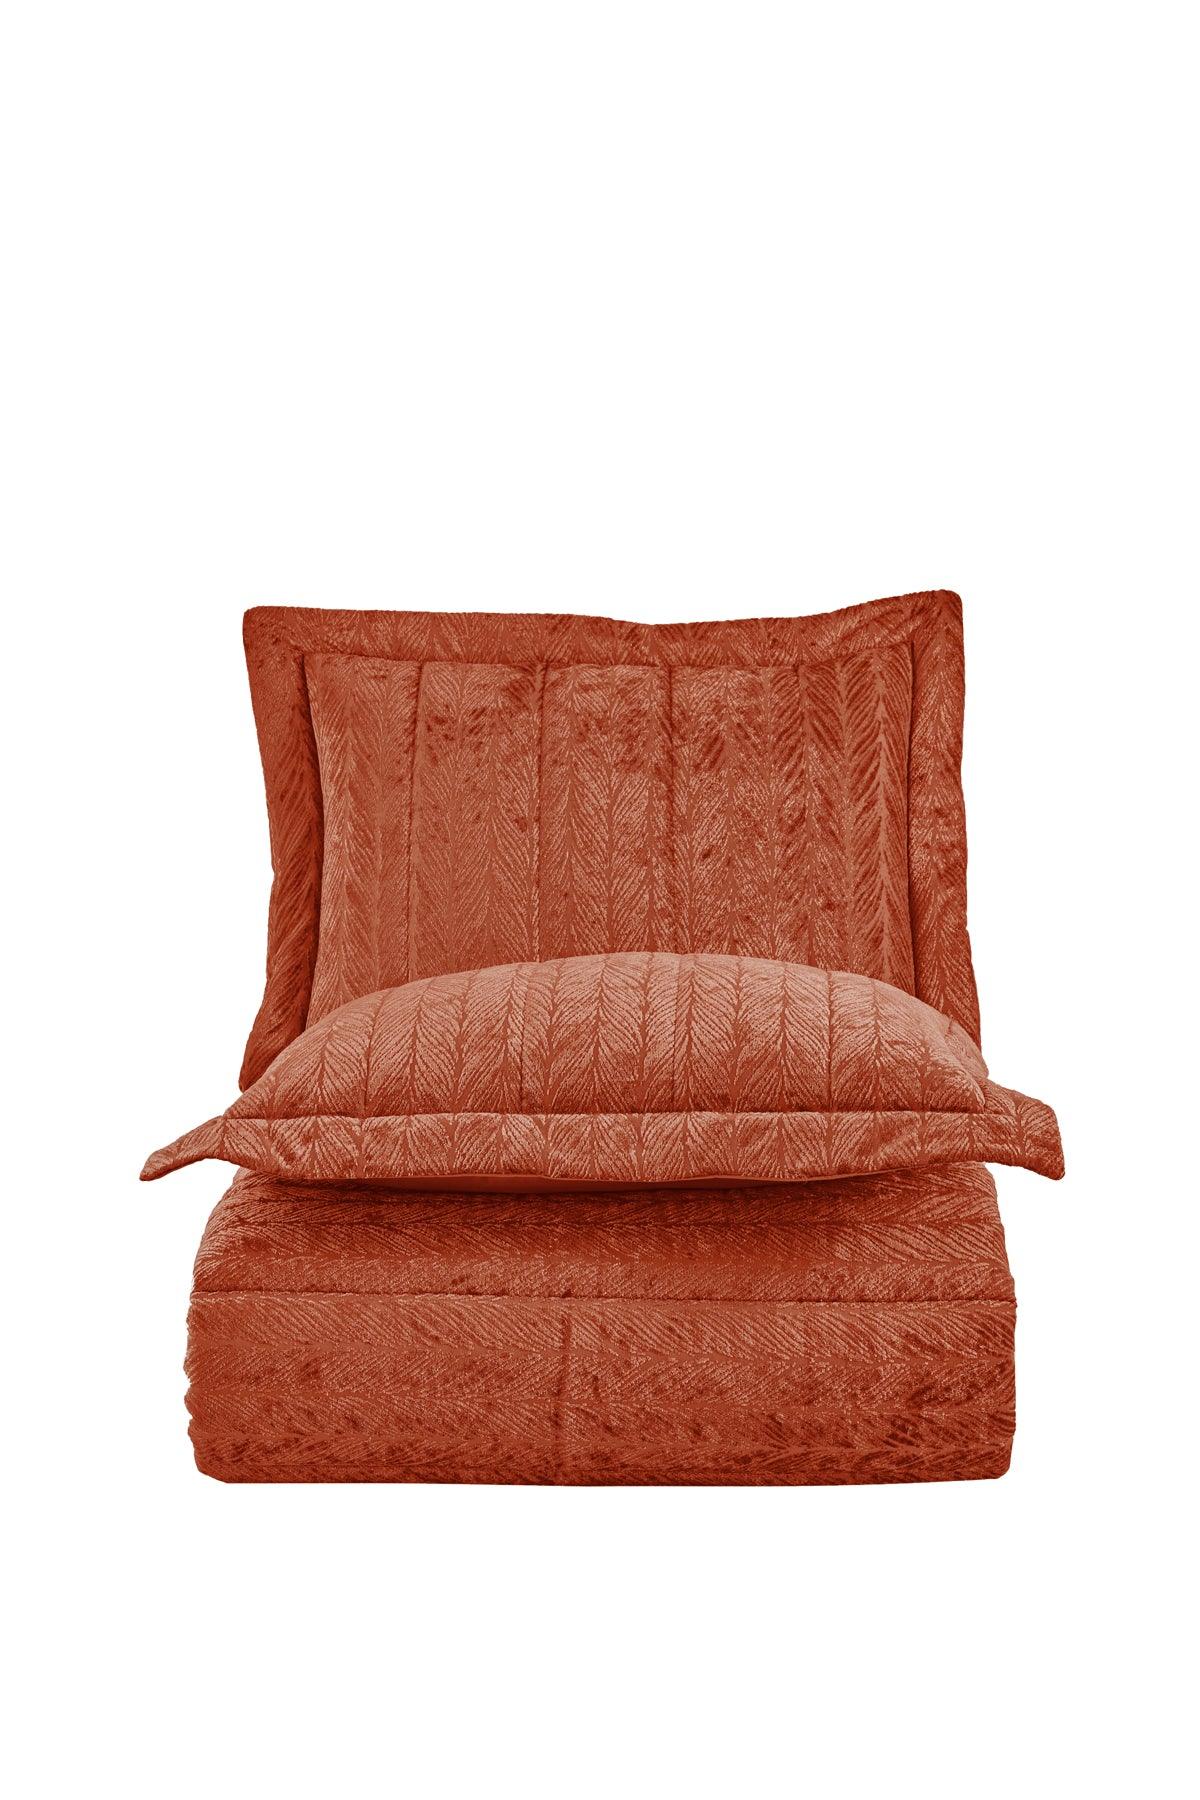 Comfort yeni nesil uykuseti - 3 parça Velvet Tarçın (230x220cm) - Elart Home